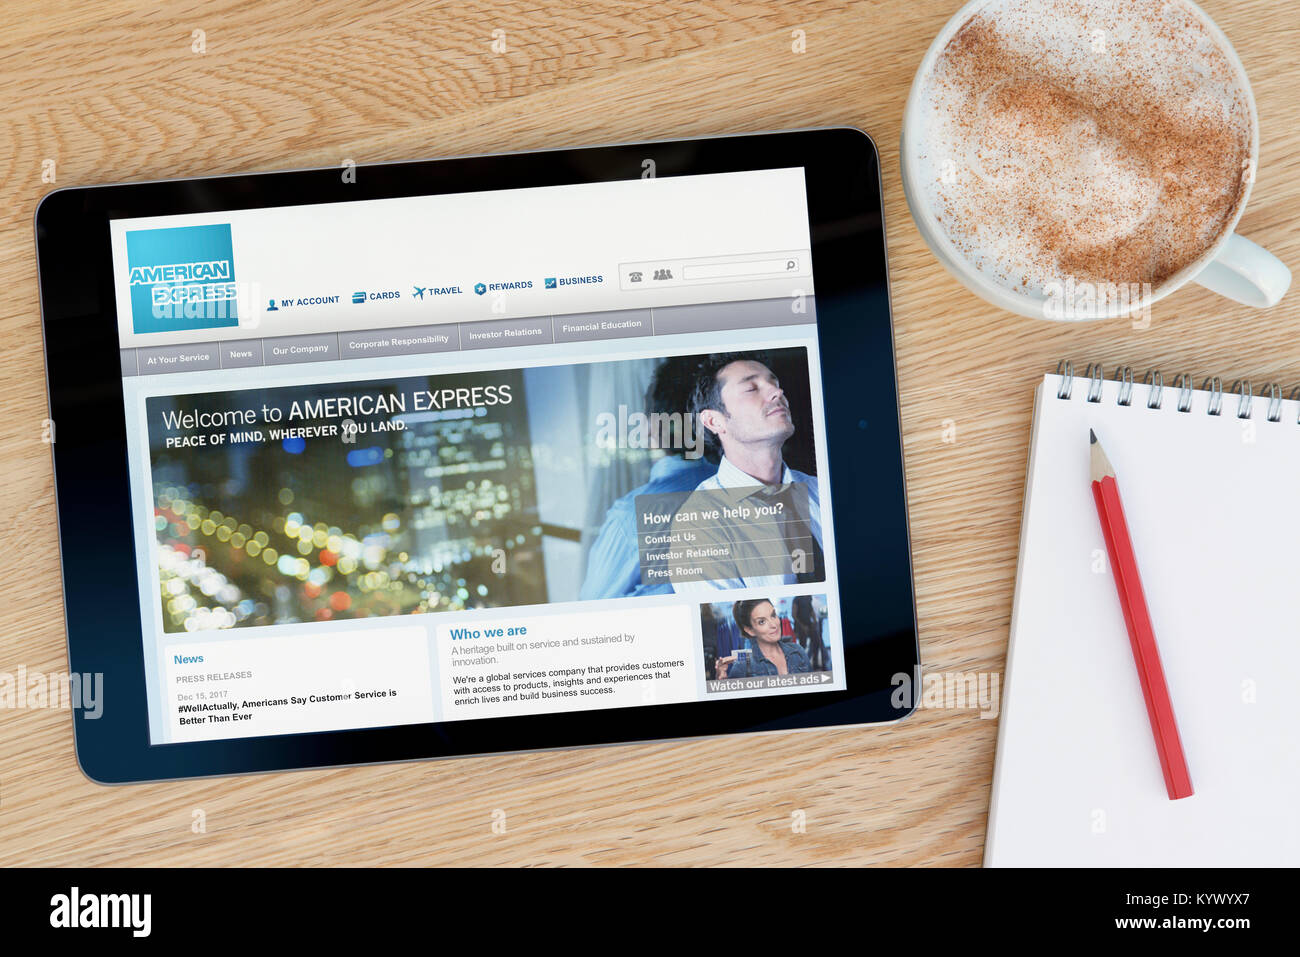 Die American Express Website auf einem iPad Tablet, auf einen hölzernen Tisch neben einem Notizblock, Bleistift und Tasse Kaffee (nur redaktionell) Stockfoto